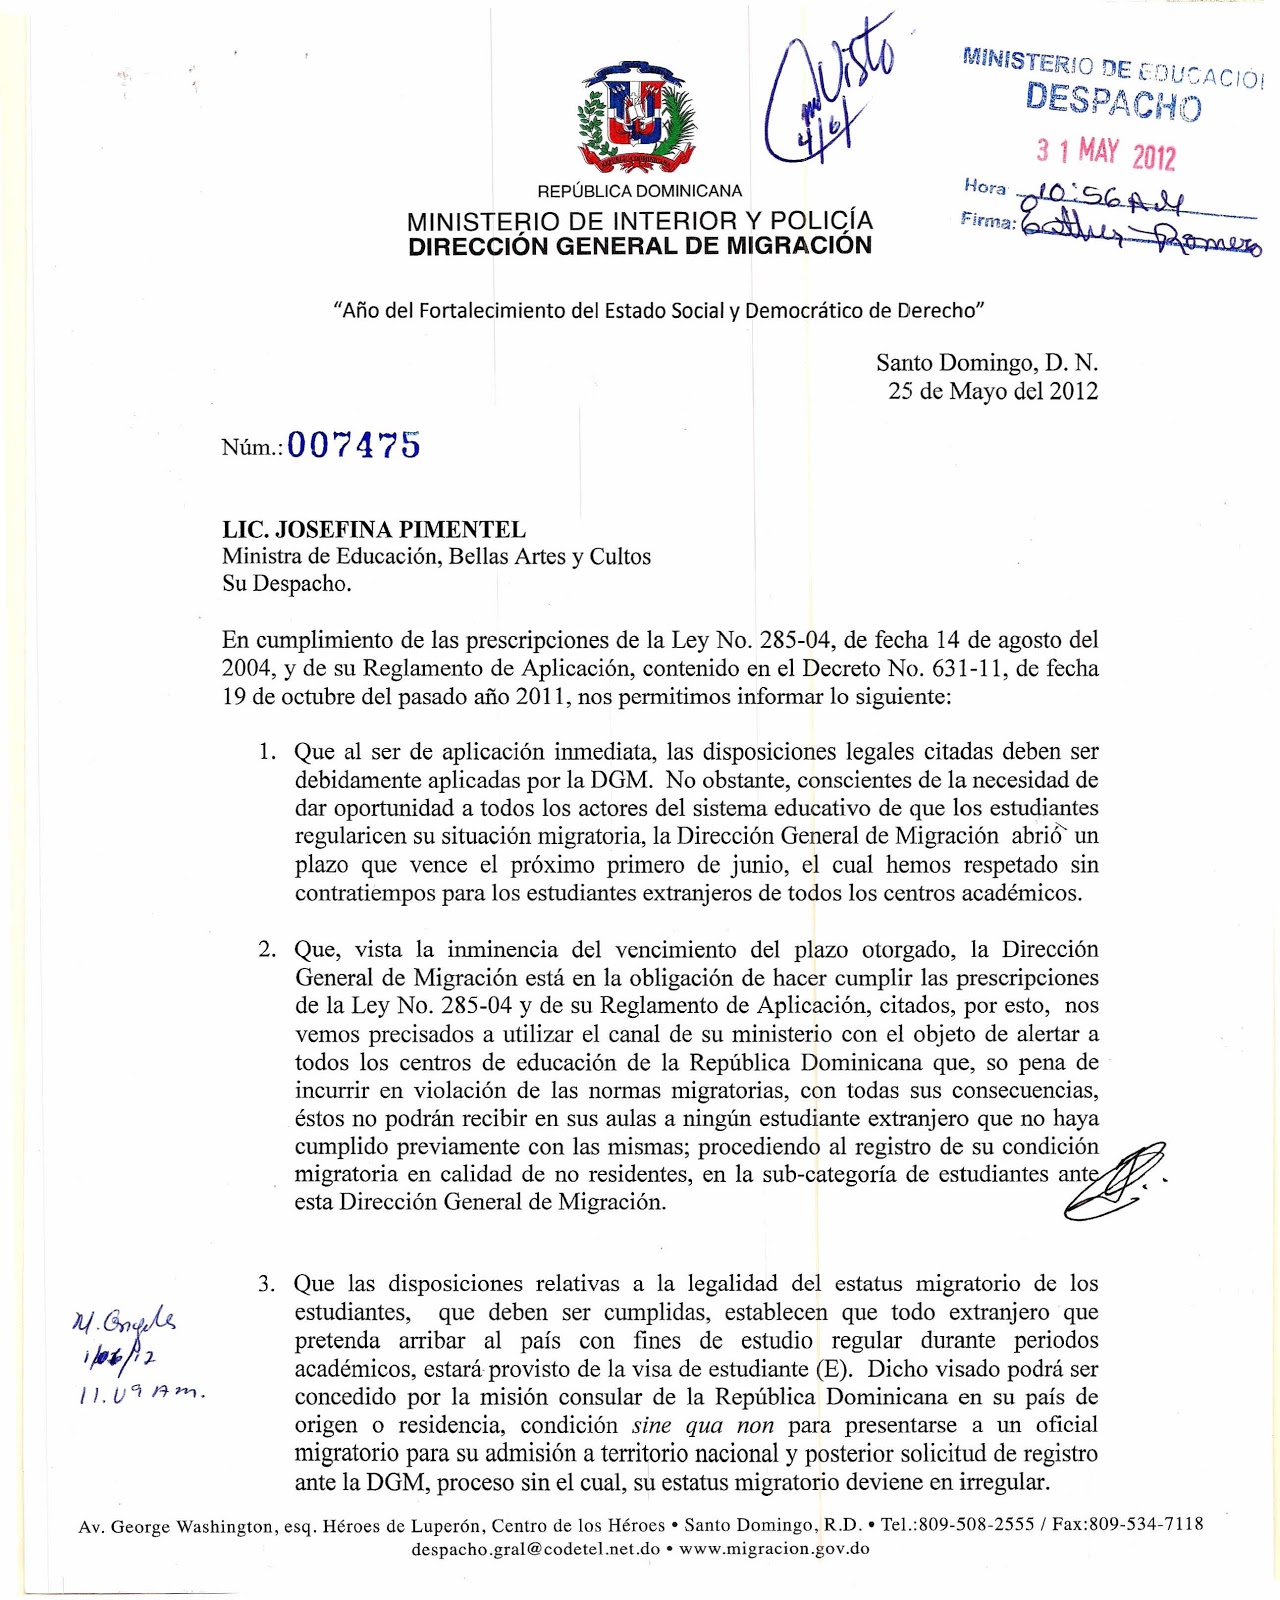 La carta de Migración al Ministerio de Educación - María Isabel Soldevila